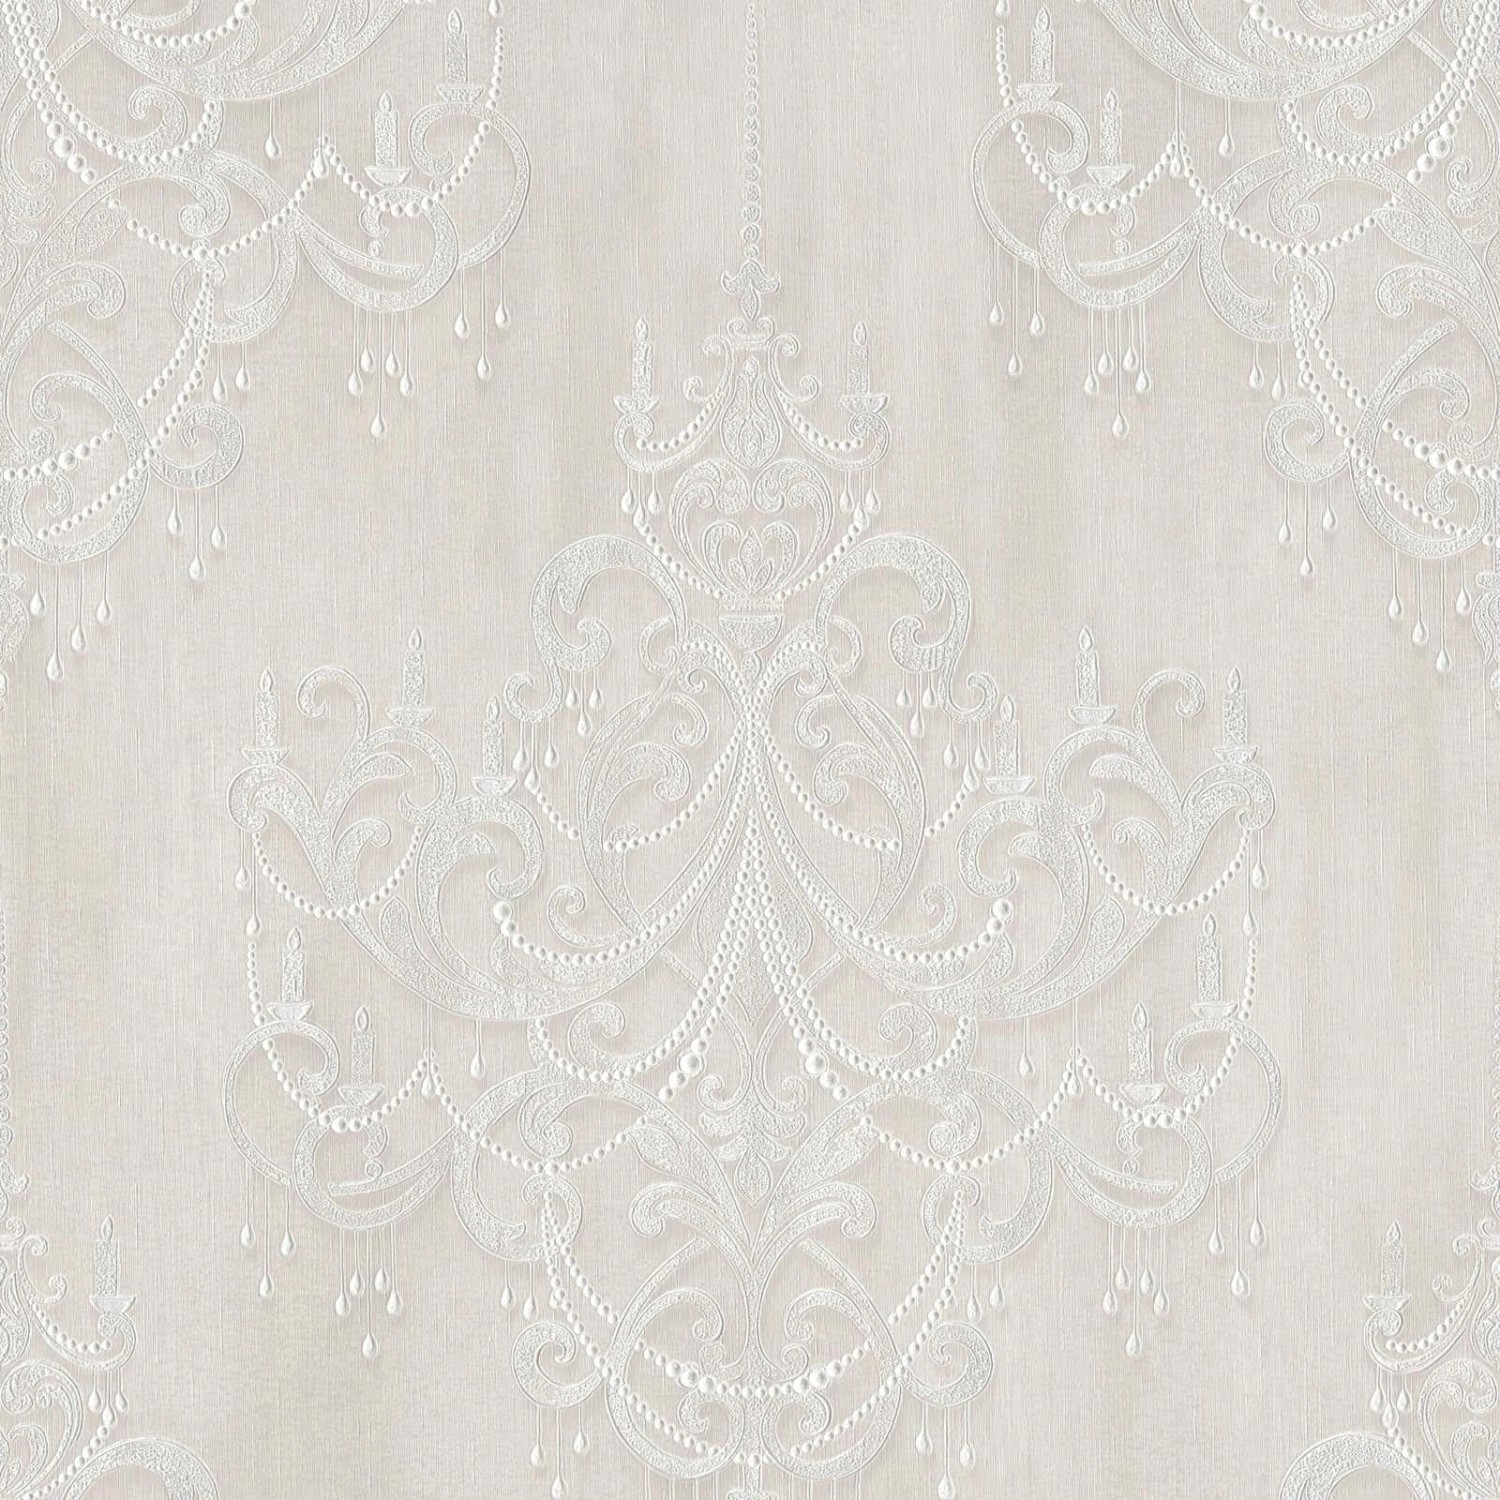 Bricoflor Neobarock Tapete Grau Silber Elegante Vliestapete mit Kronleuchter Muster für Ess und Schlafzimmer Romantische Barock Wandtapete mit Vinyl von Bricoflor